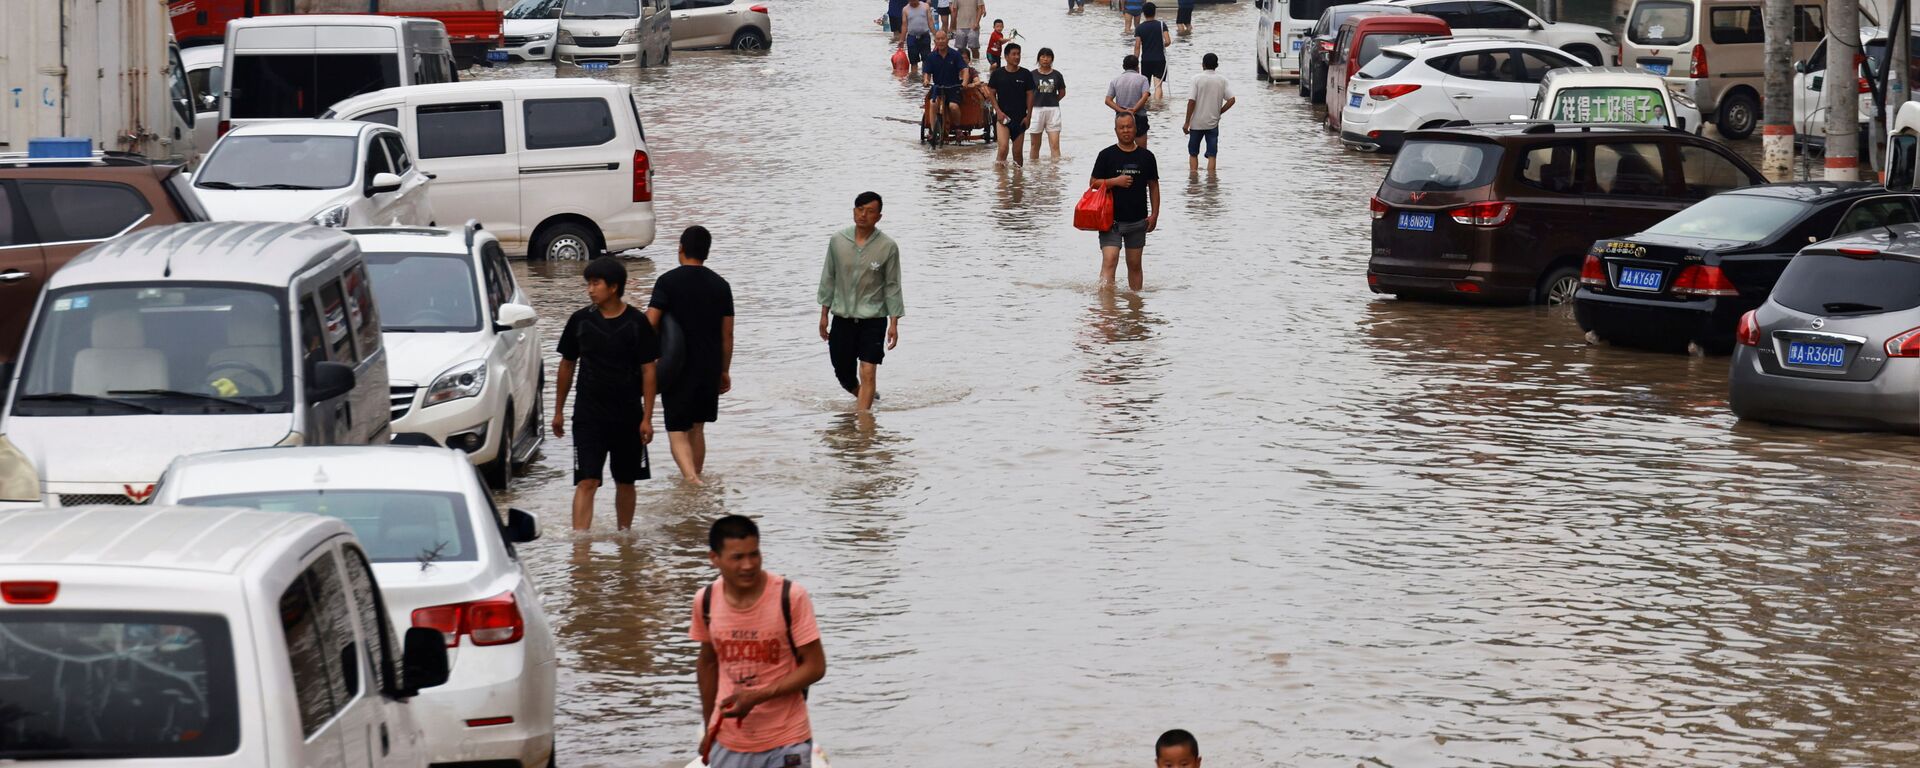 Người dân băng qua dòng nước lũ sau trận mưa lớn ở Trịnh Châu, tỉnh Hà Nam, Trung Quốc - Sputnik Việt Nam, 1920, 28.07.2021